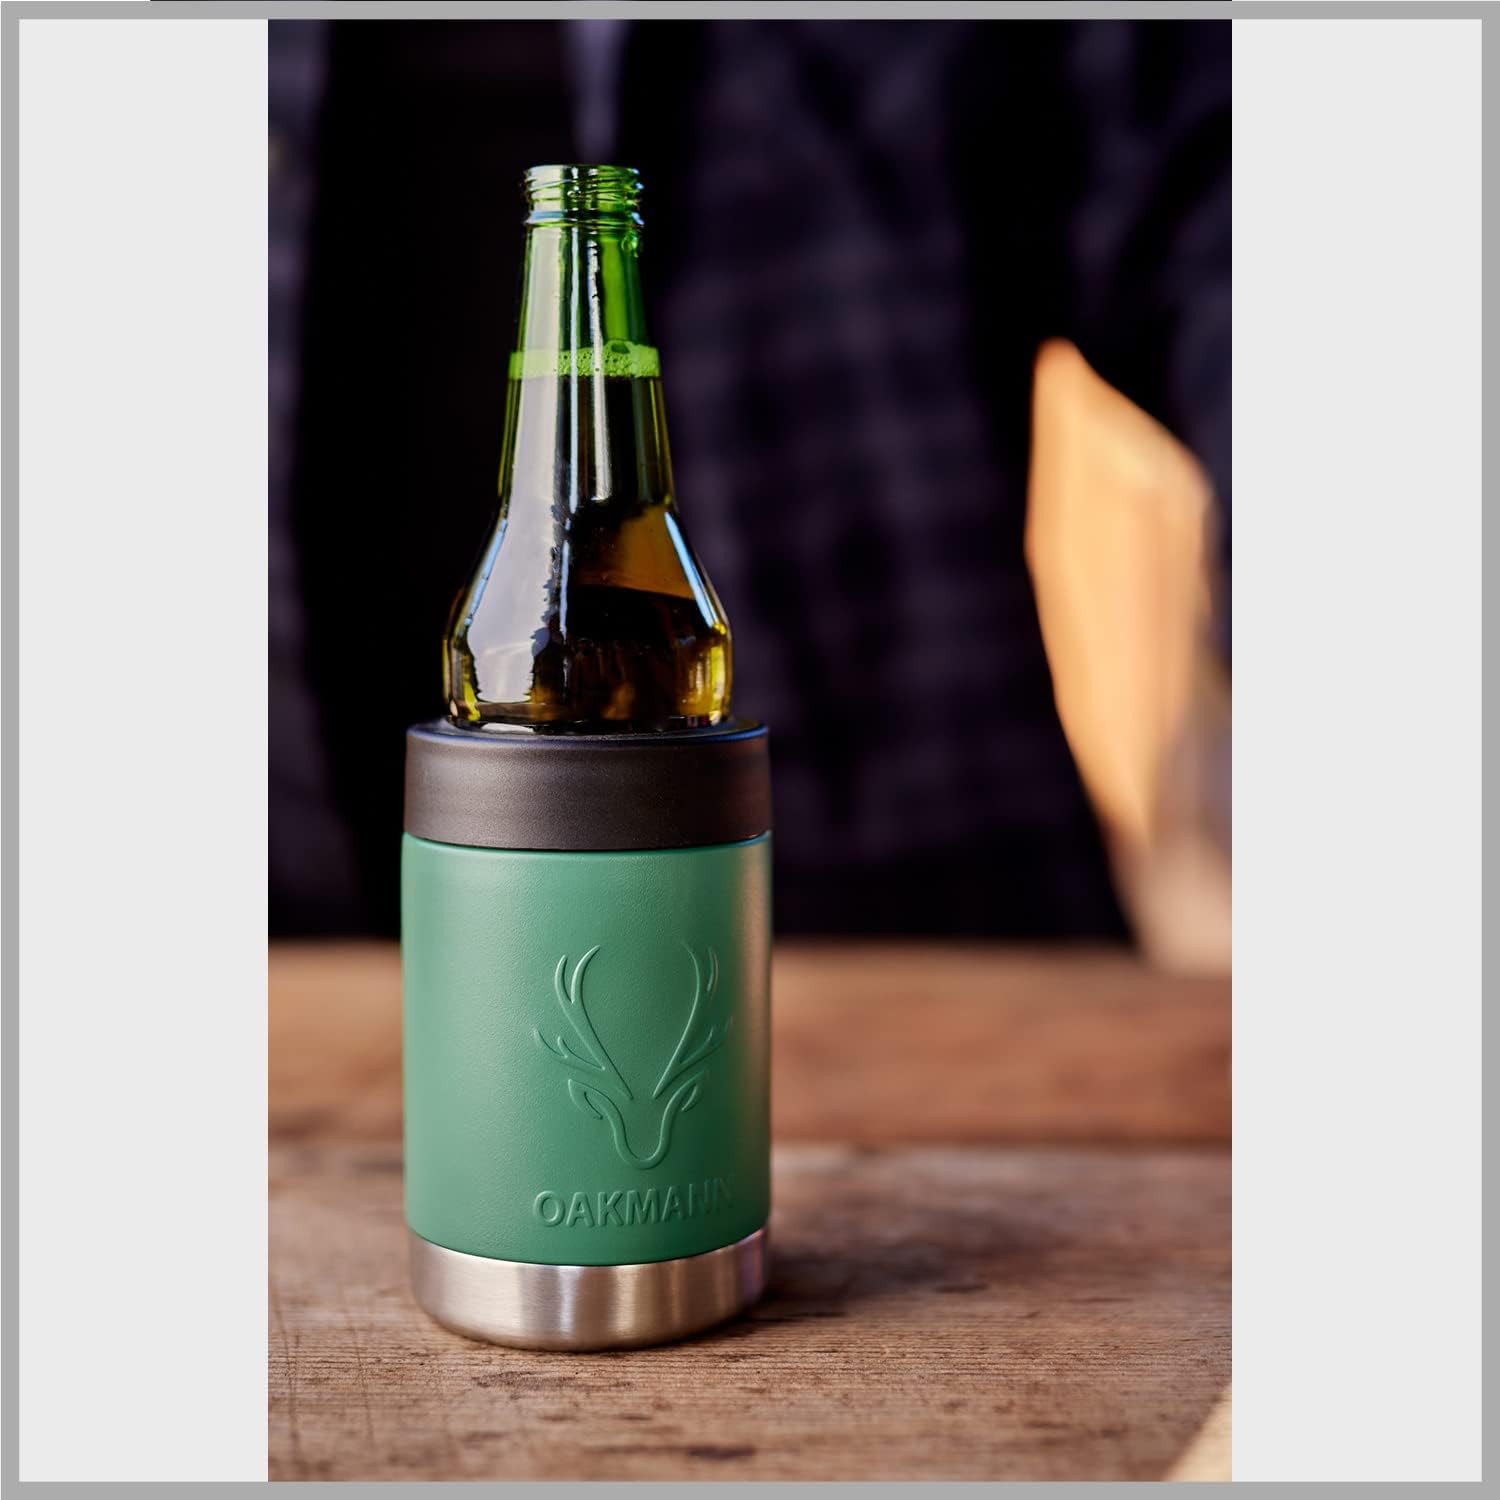 STUBiBudi Beer Can Cooler 12 oz Beer Bottle Insulator Beer Bottle